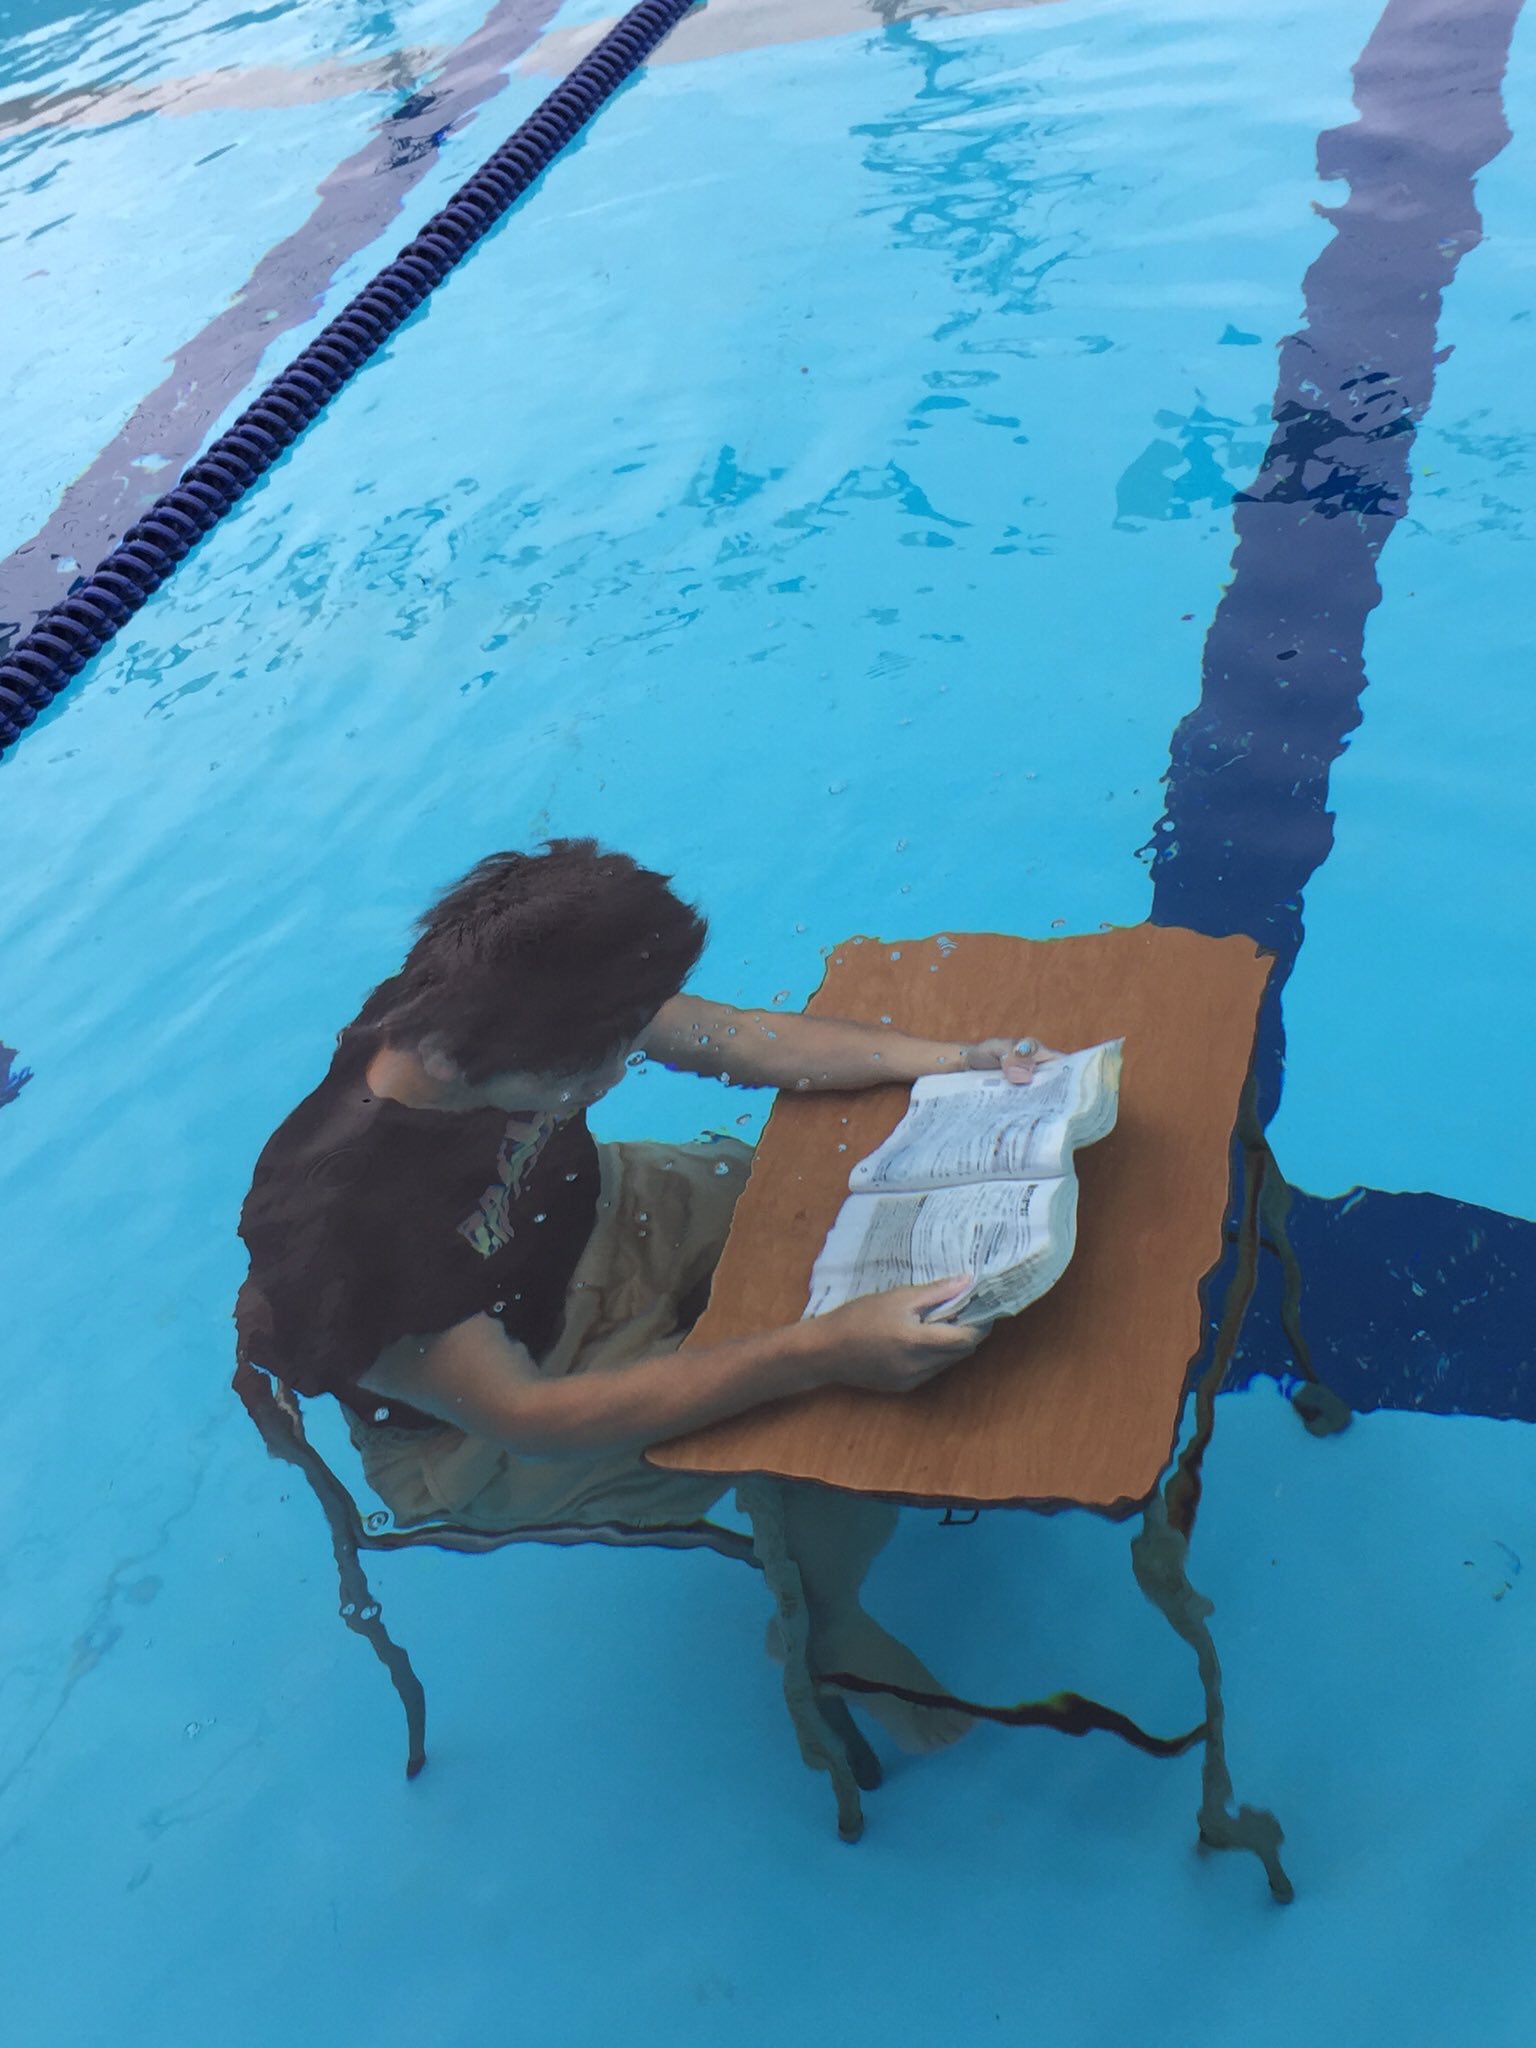 水泳部が部活と勉強を両立させた結果 水中学習が始まった 話題の画像プラス